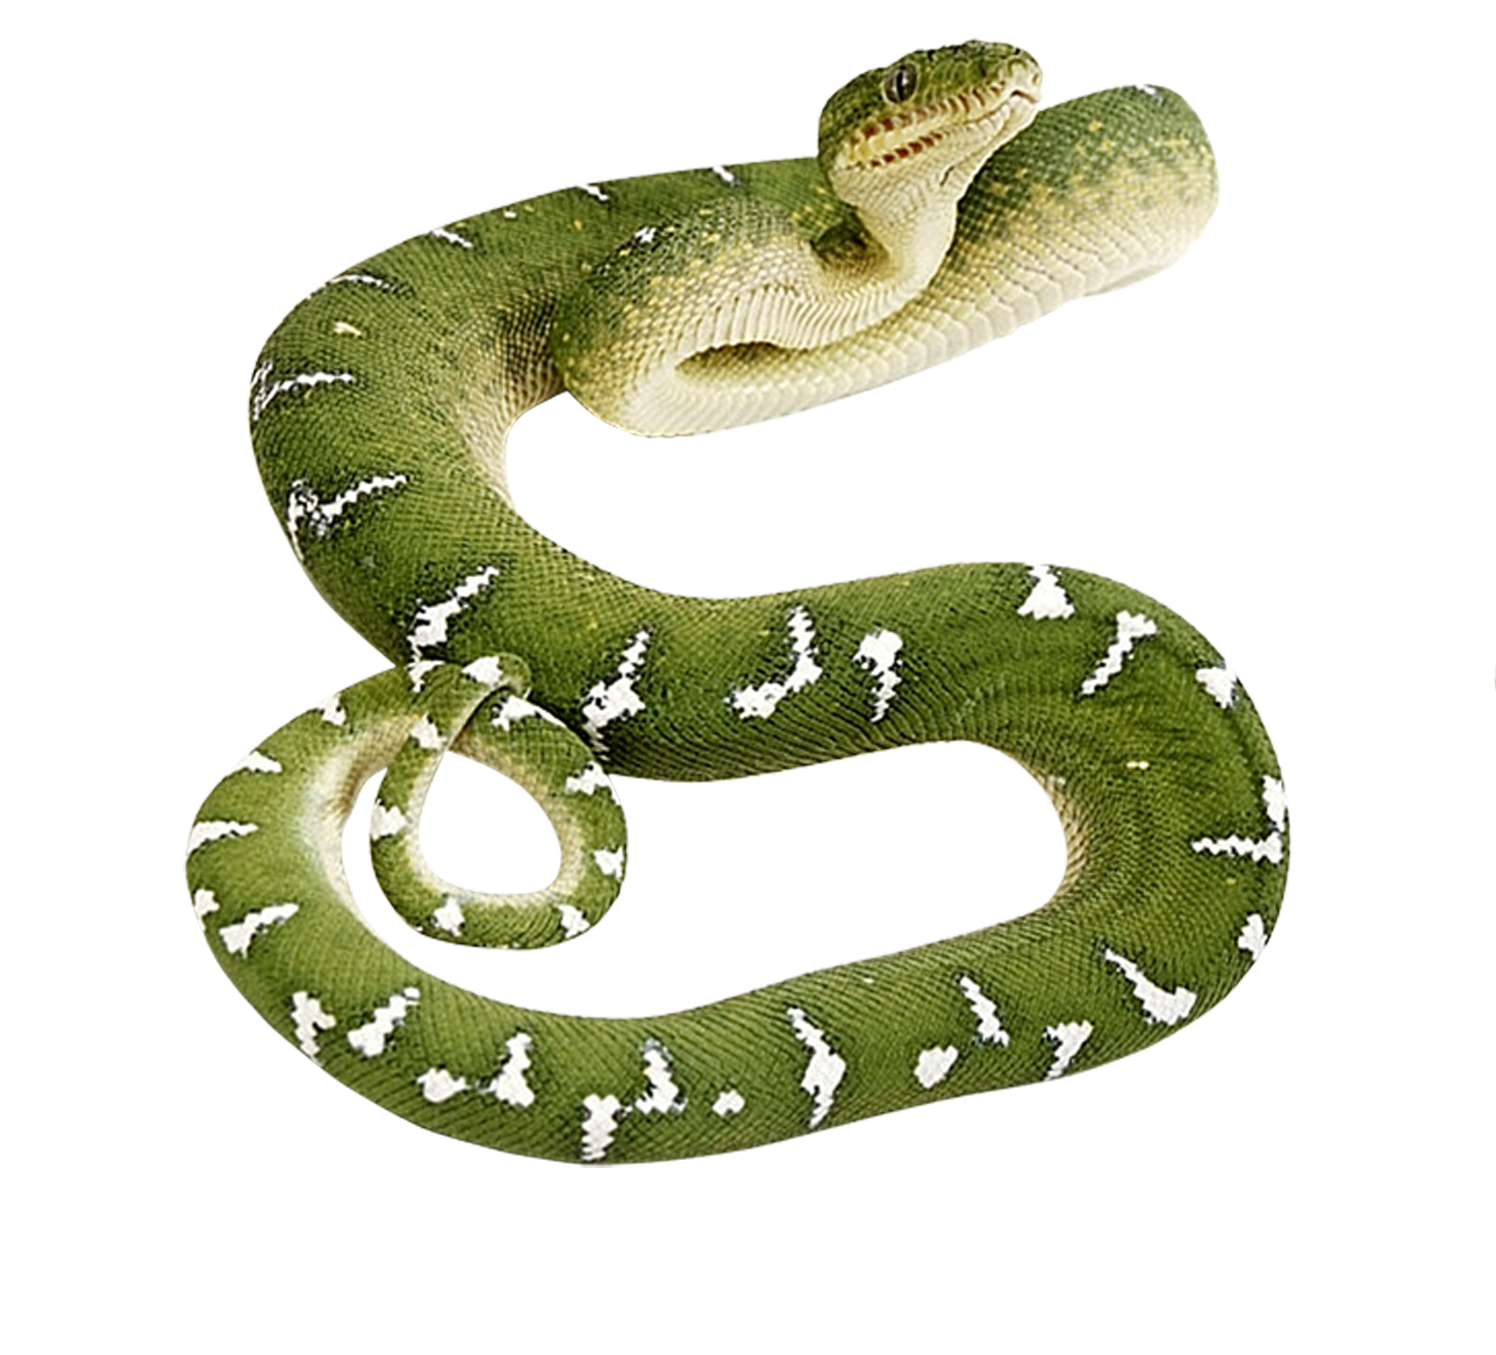 緑のヘビ